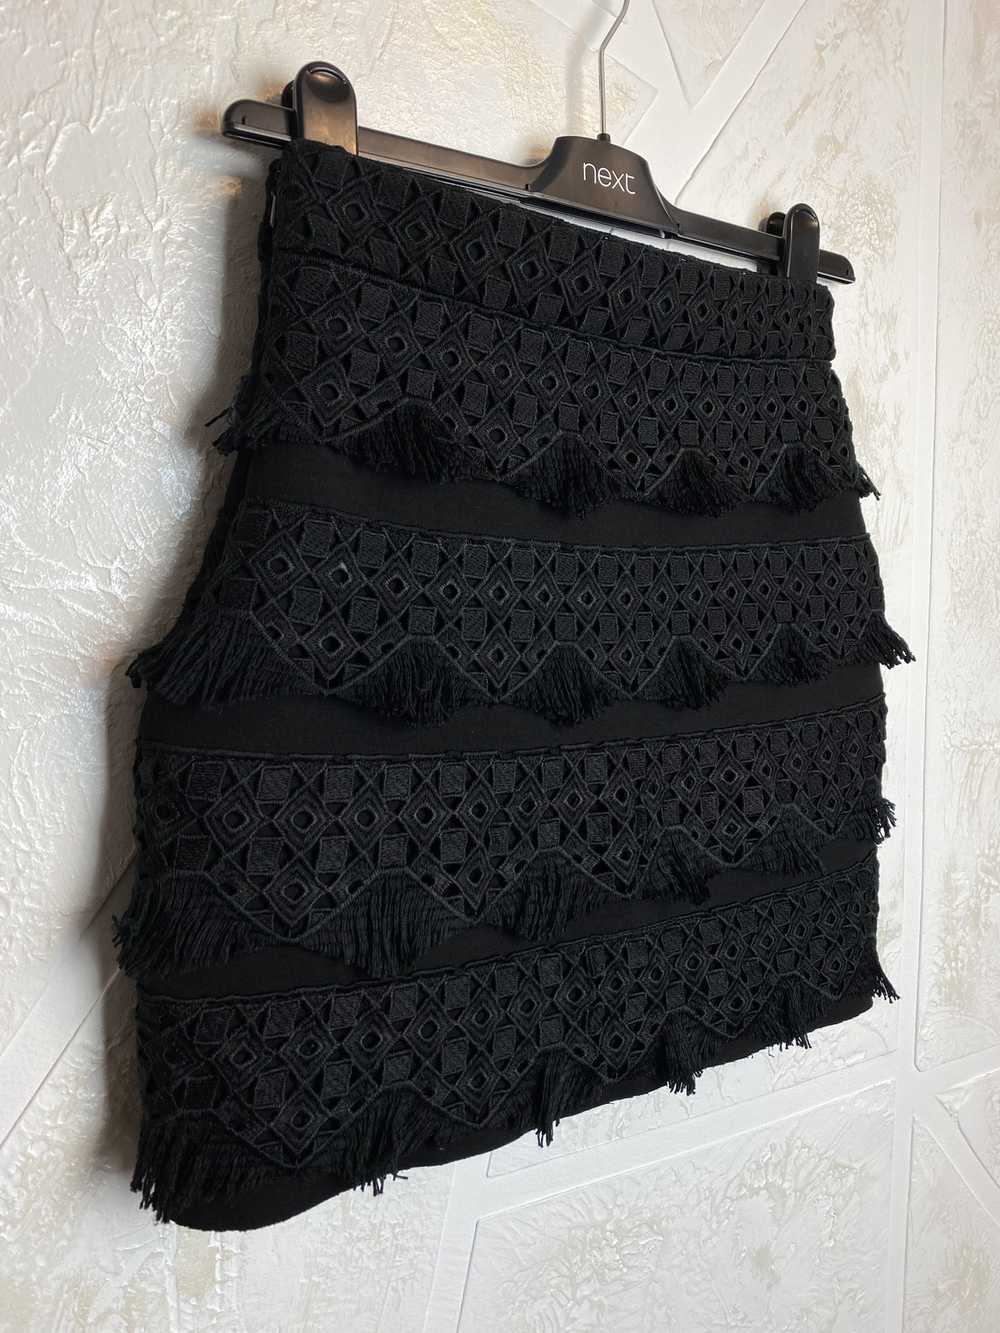 Maje Maje Paris Black Mini Skirt Geometric Patter… - image 9